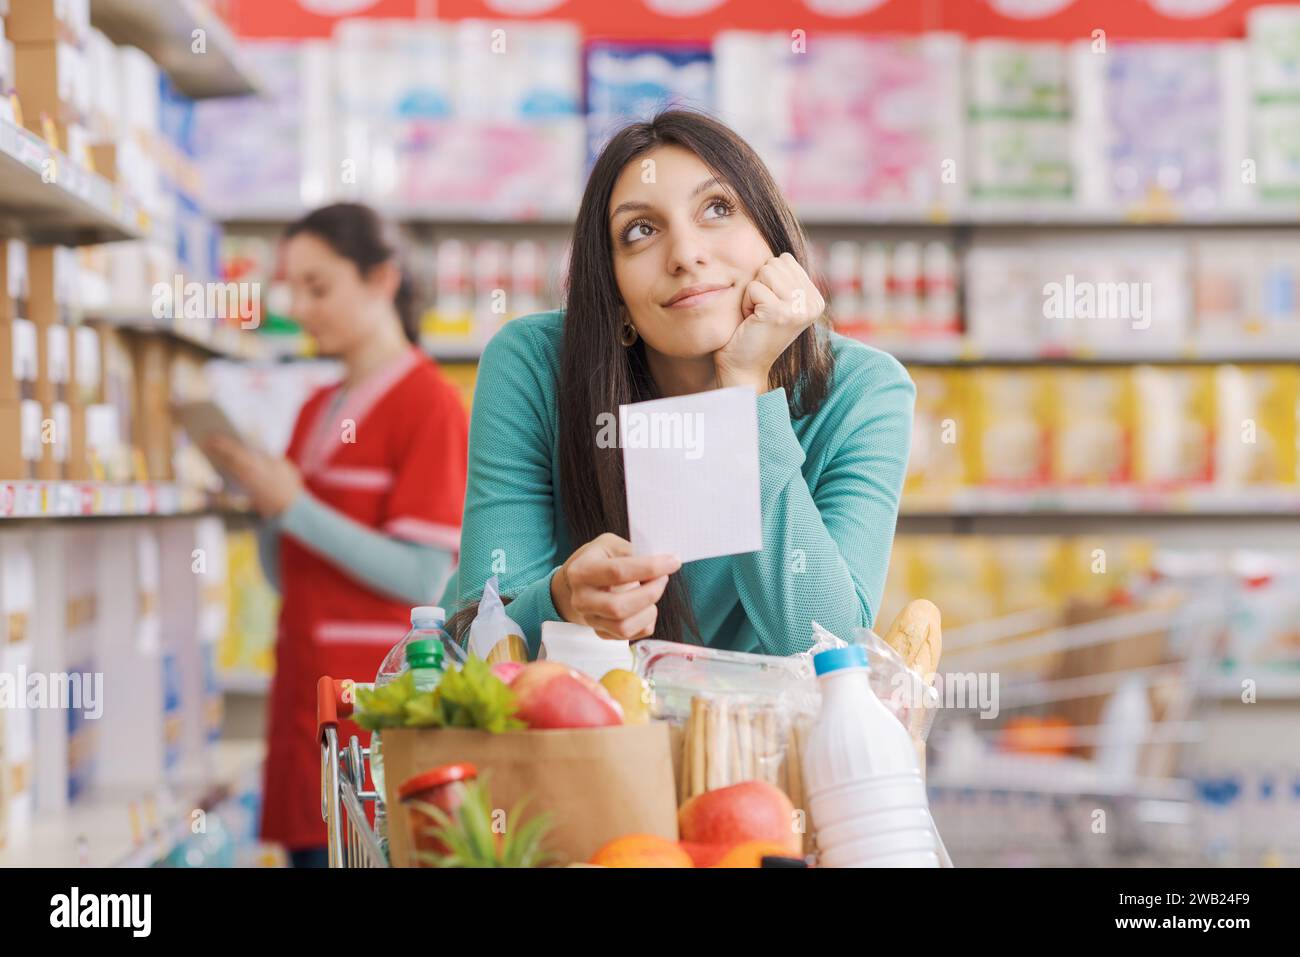 Die junge lächelnde Frau, die im Supermarkt einkaufen geht, lehnt sich auf den Wagen, hält eine Lebensmittelliste und lächelt Stockfoto